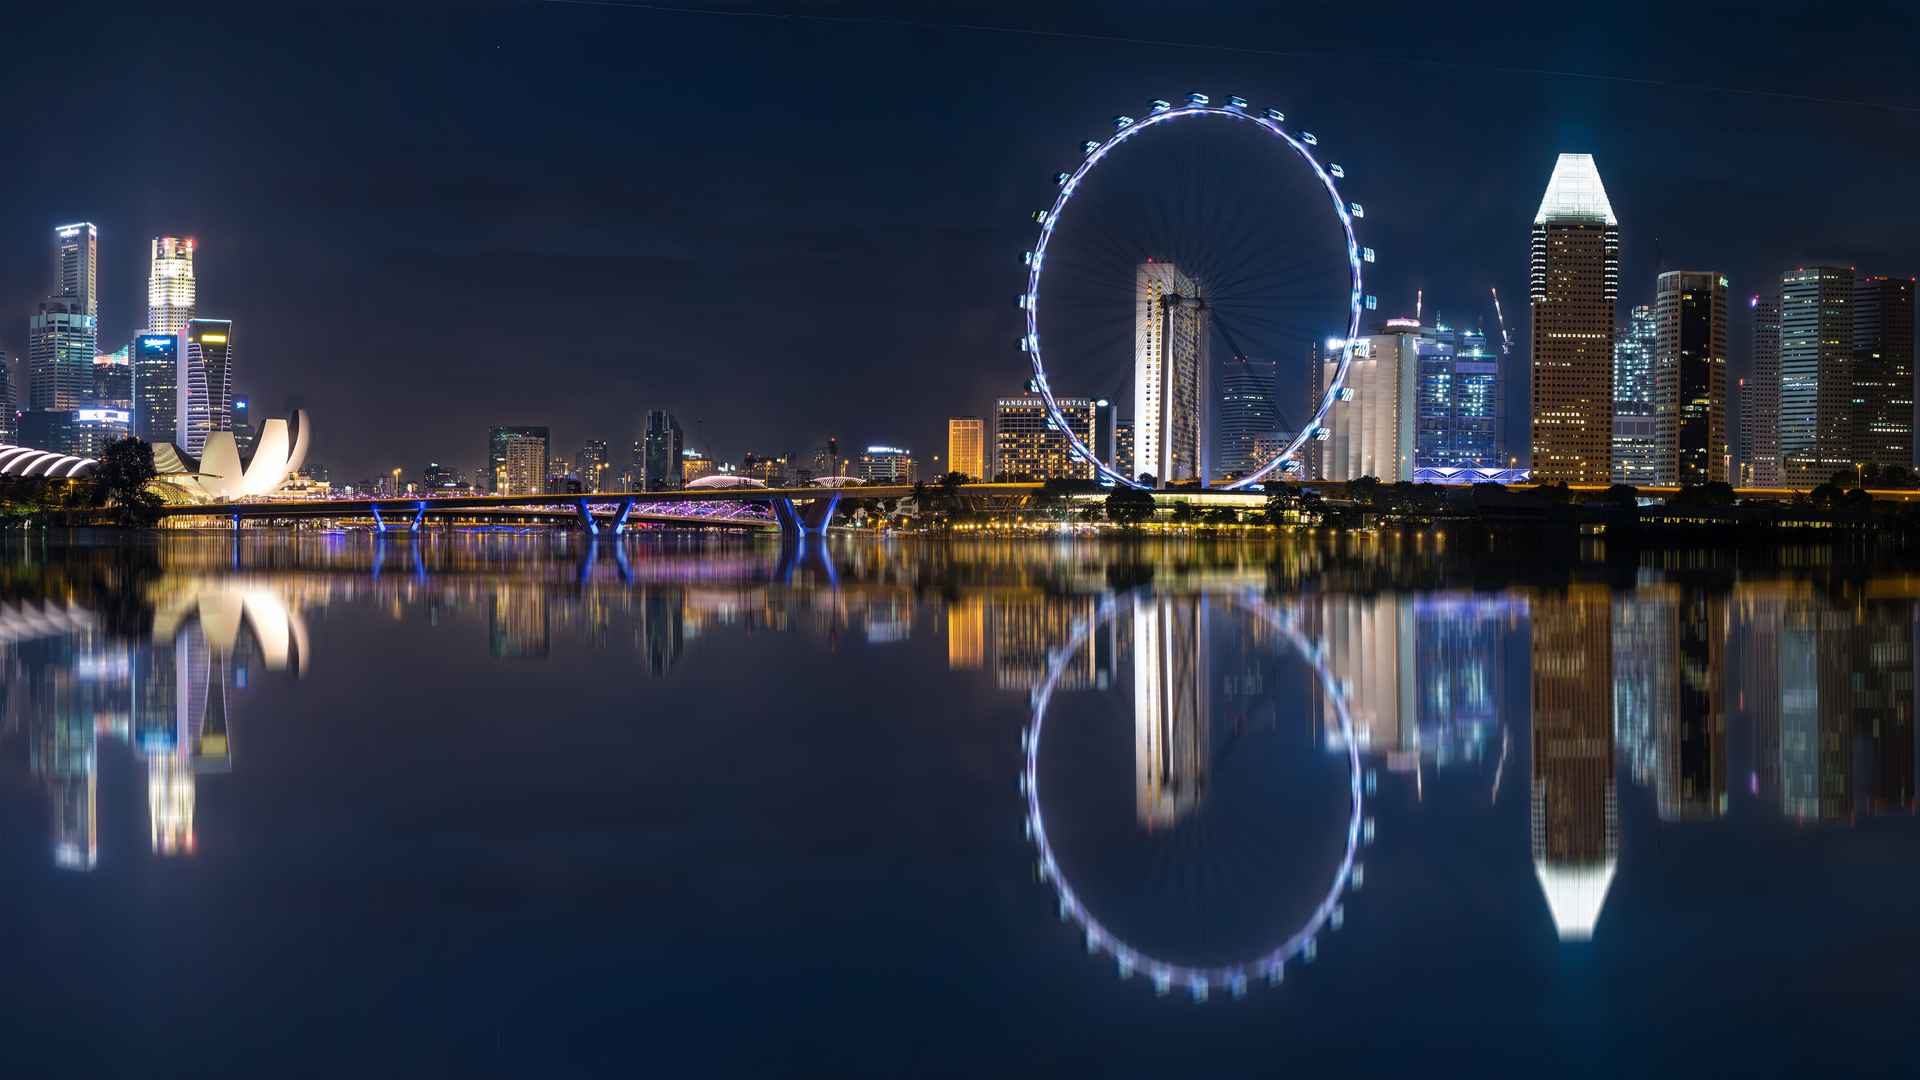 新加坡的夜景好美～滨海湾中心的灯光秀在音乐、灯光、焰火的交织下